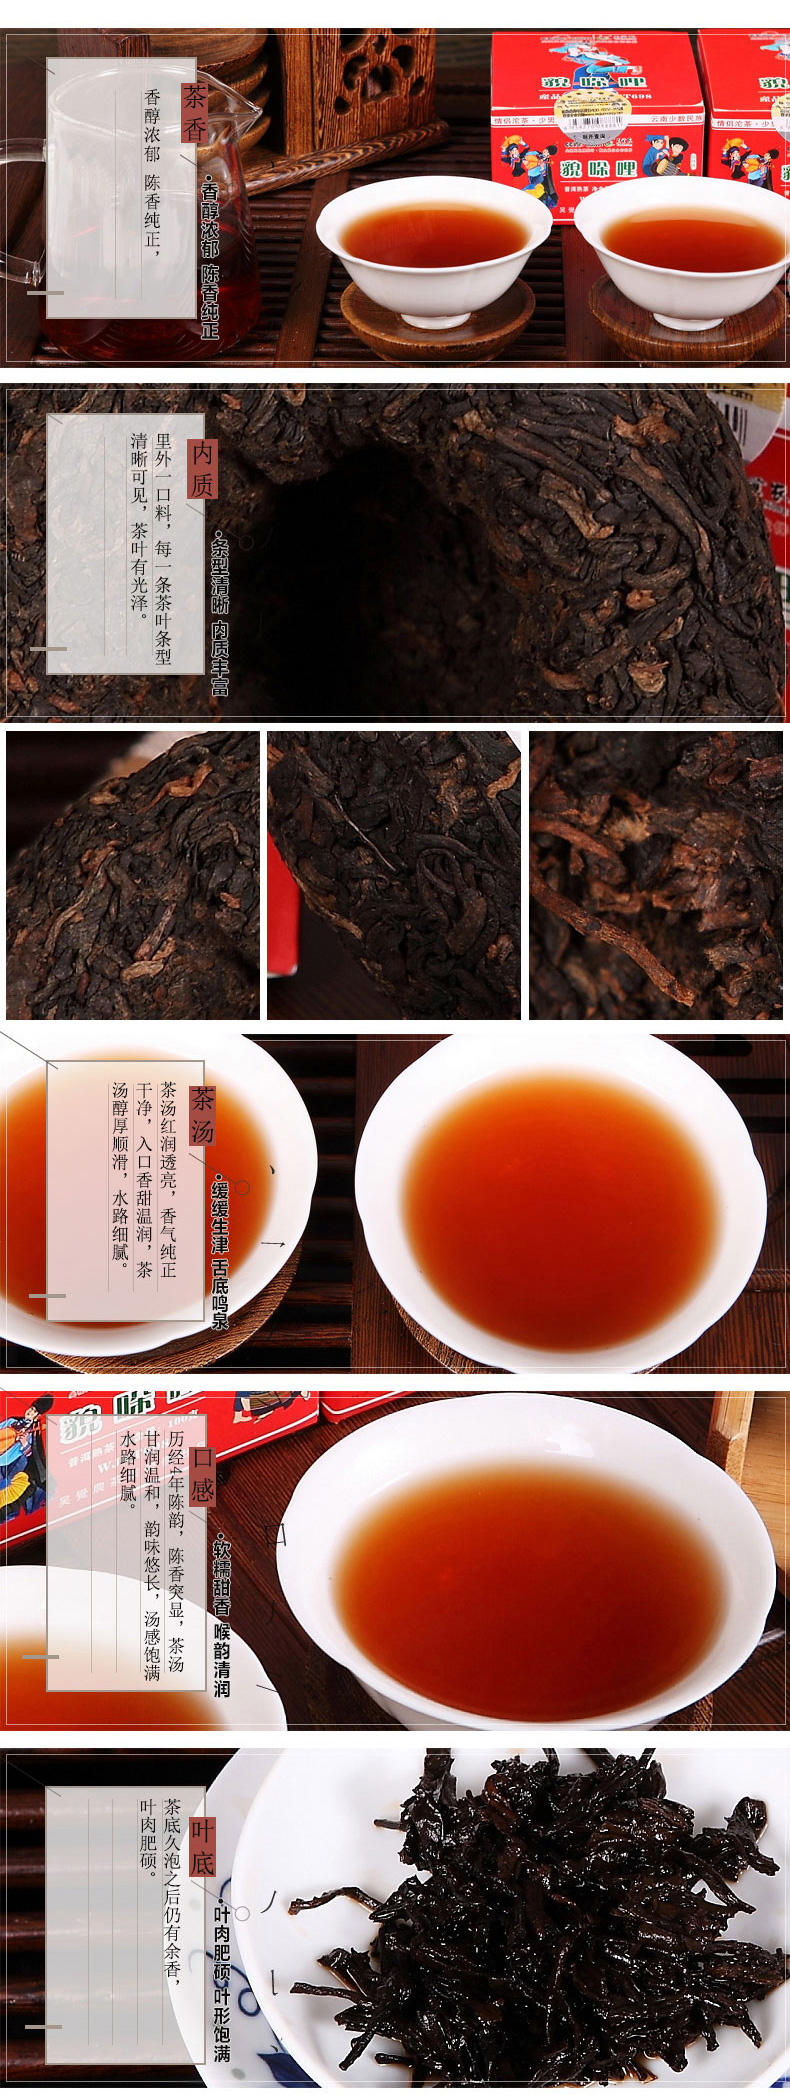 吴觉农茶叶 普洱茶 熟茶 貌哚哩少男熟沱100g 普洱小沱茶 5年发酵(图2)